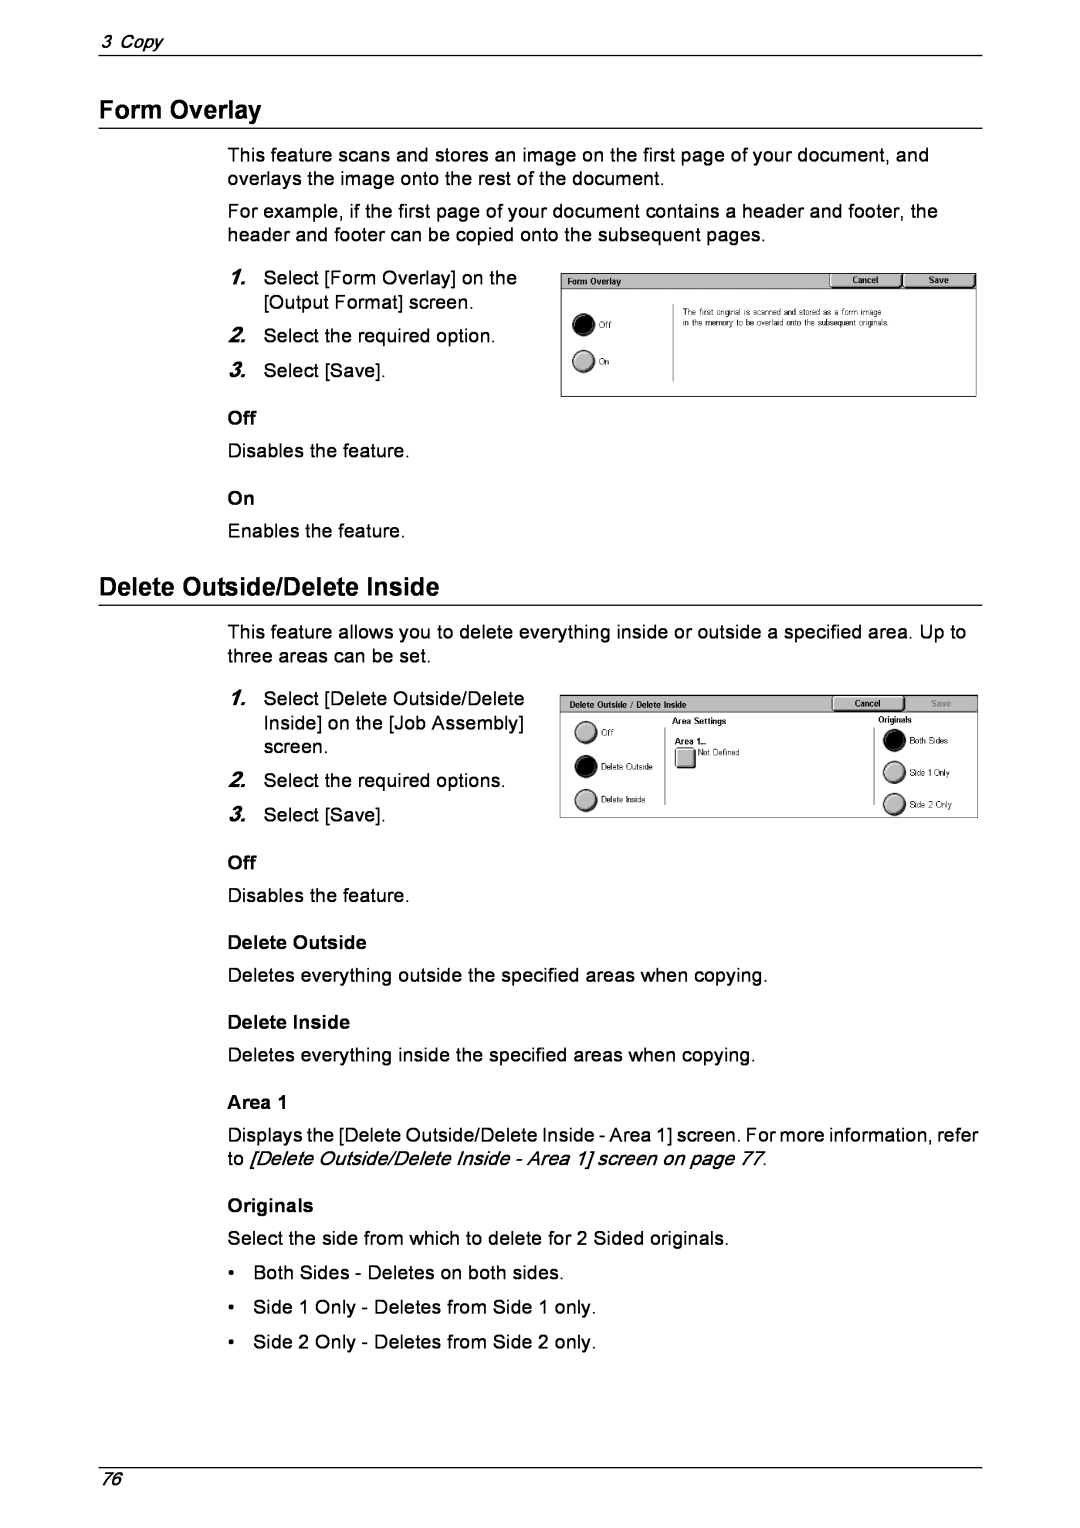 Xerox 5230 manual Form Overlay, Delete Outside/Delete Inside, Area, Originals 